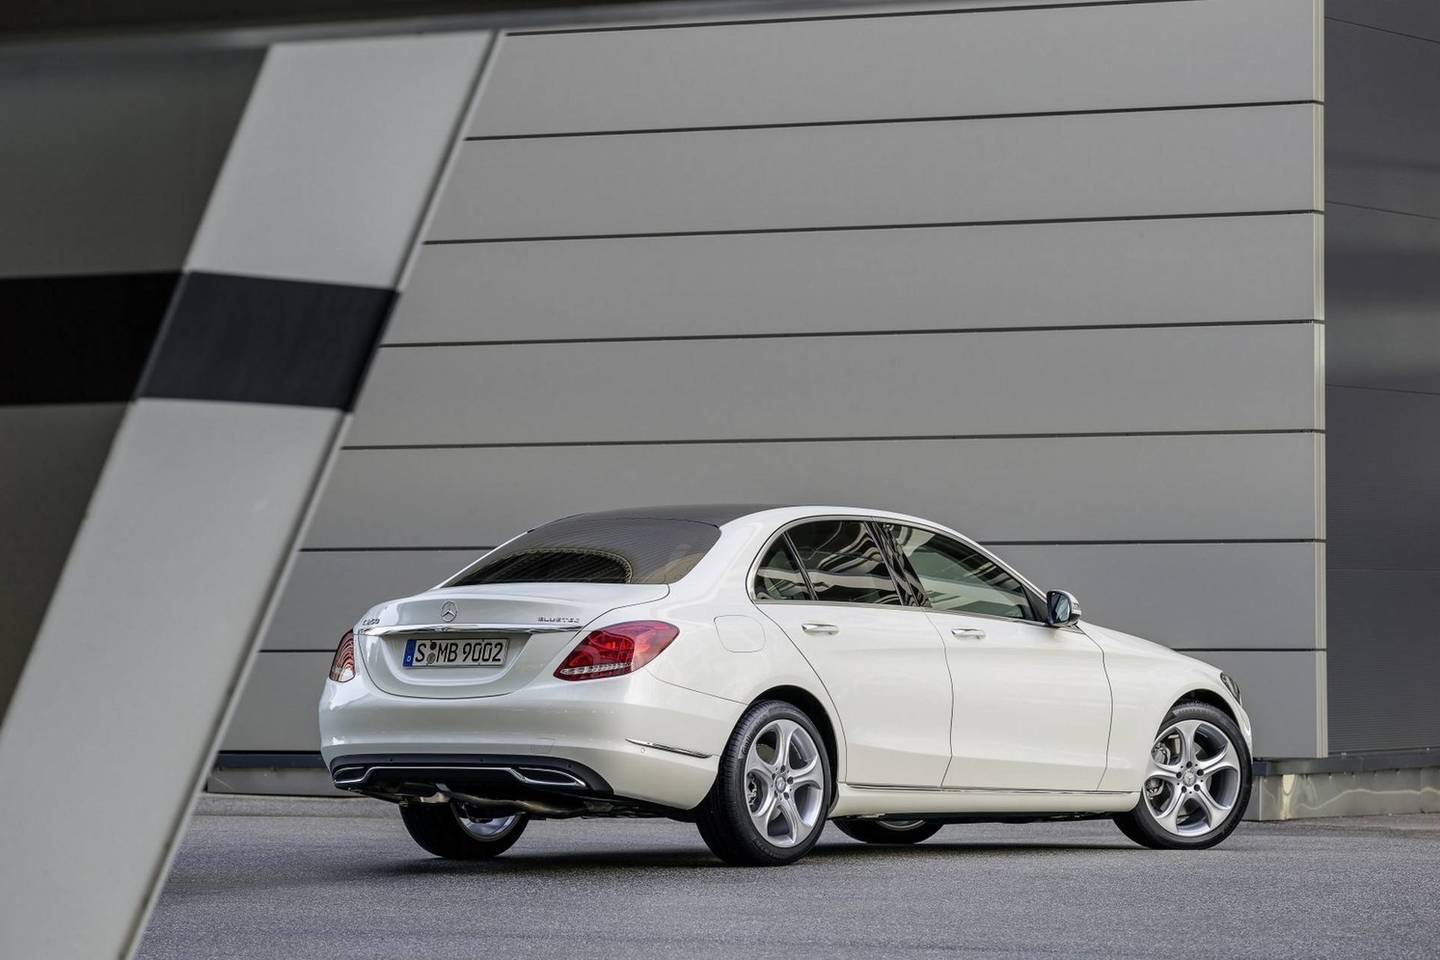 Pirmieji pretendentai į "Metų automobilio" titulą - "Mercedes-Benz" modeliai.<br>Gamintojo nuotr.